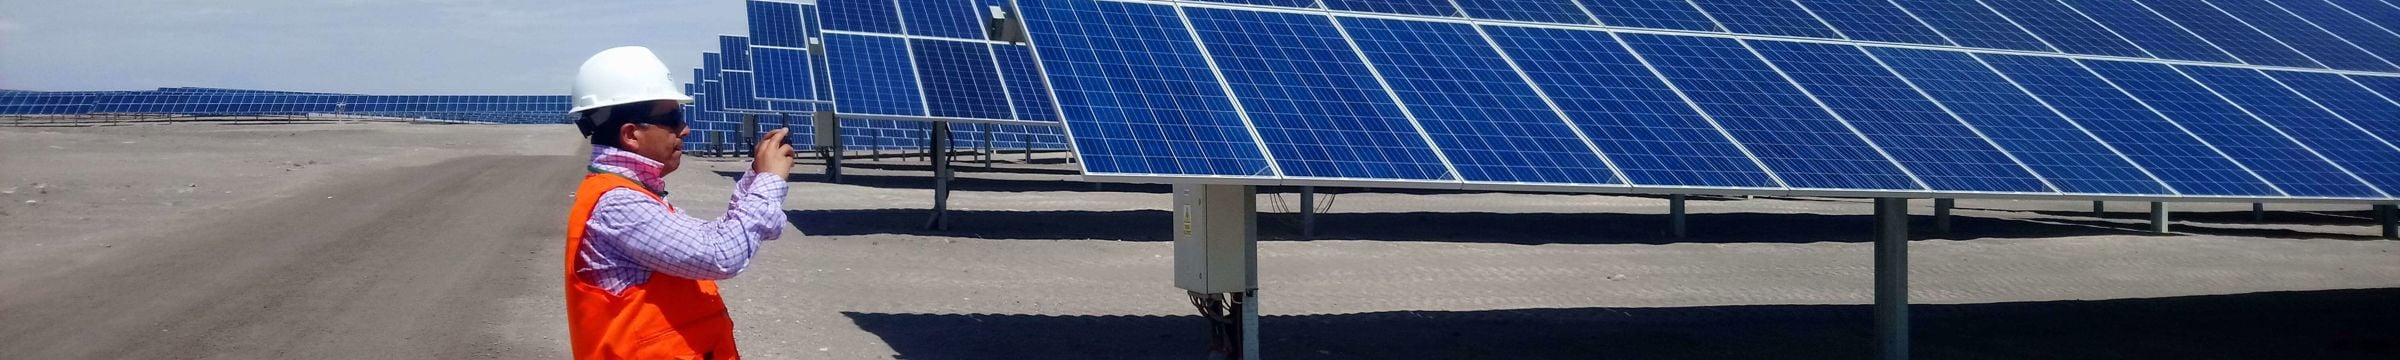 Trabajador Statkraft en parque solar, energía renovable